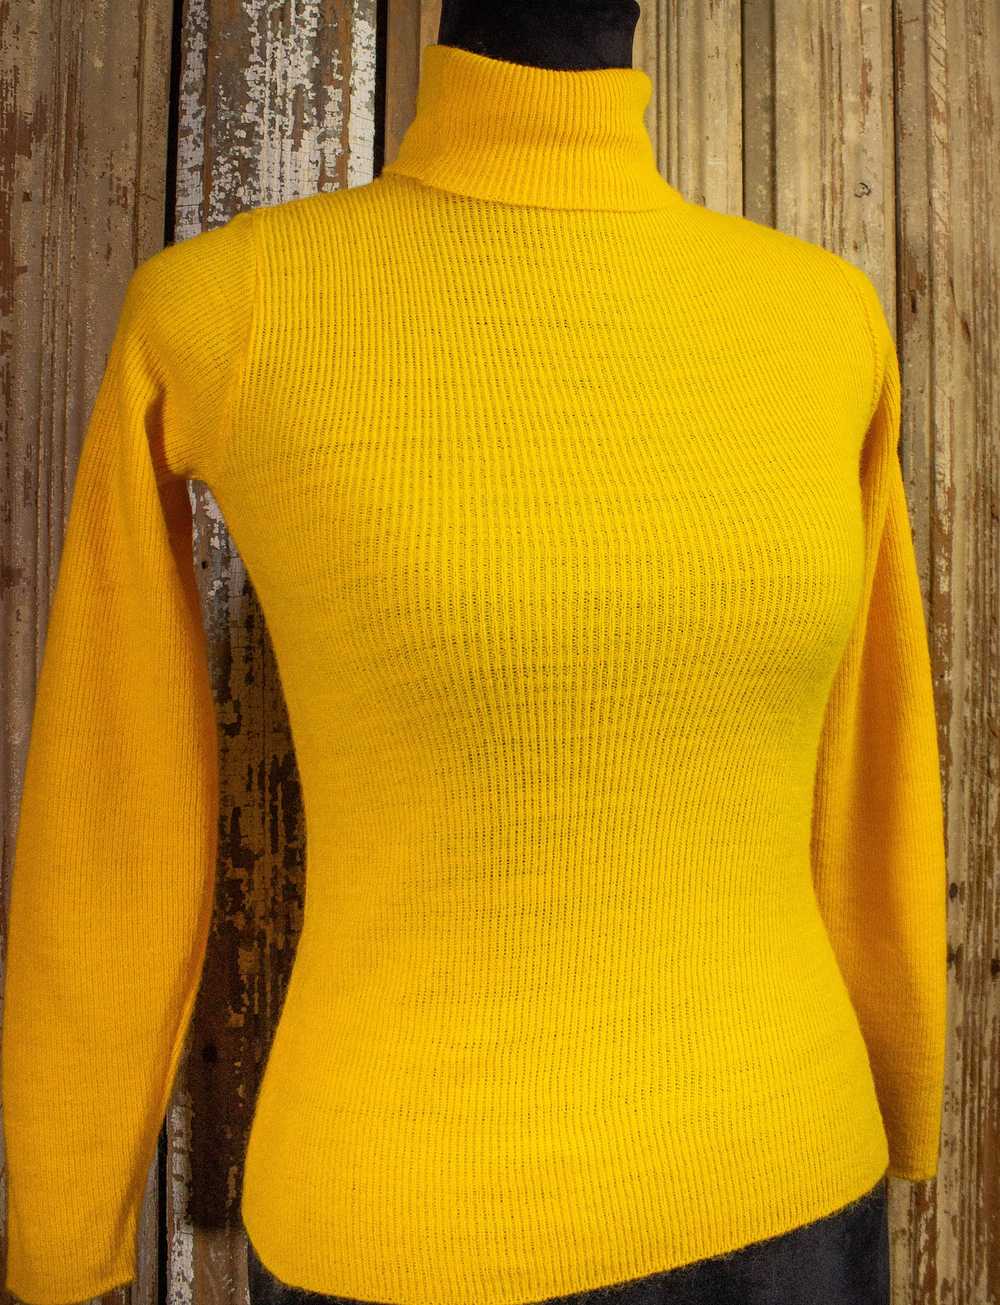 Vintage Vintage Knit One Turtleneck Sweater 70s - image 3